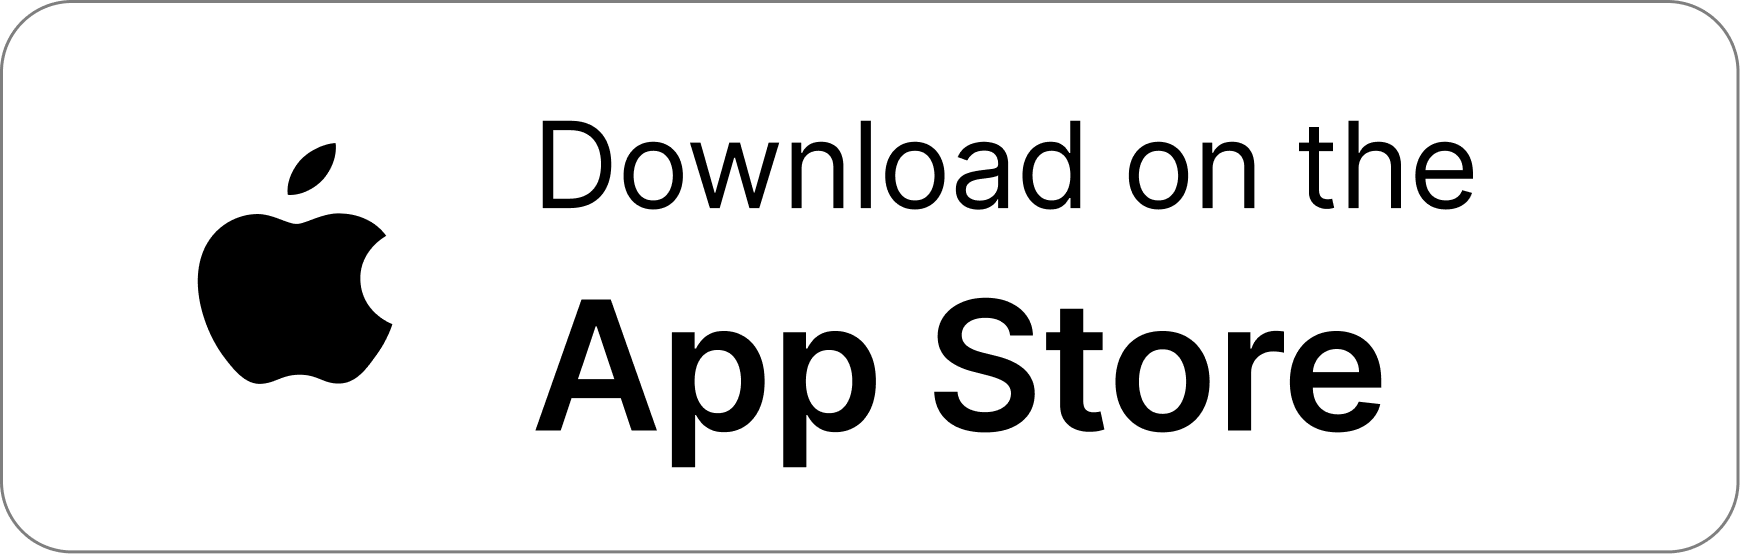 Bouton blanc de l'App Store